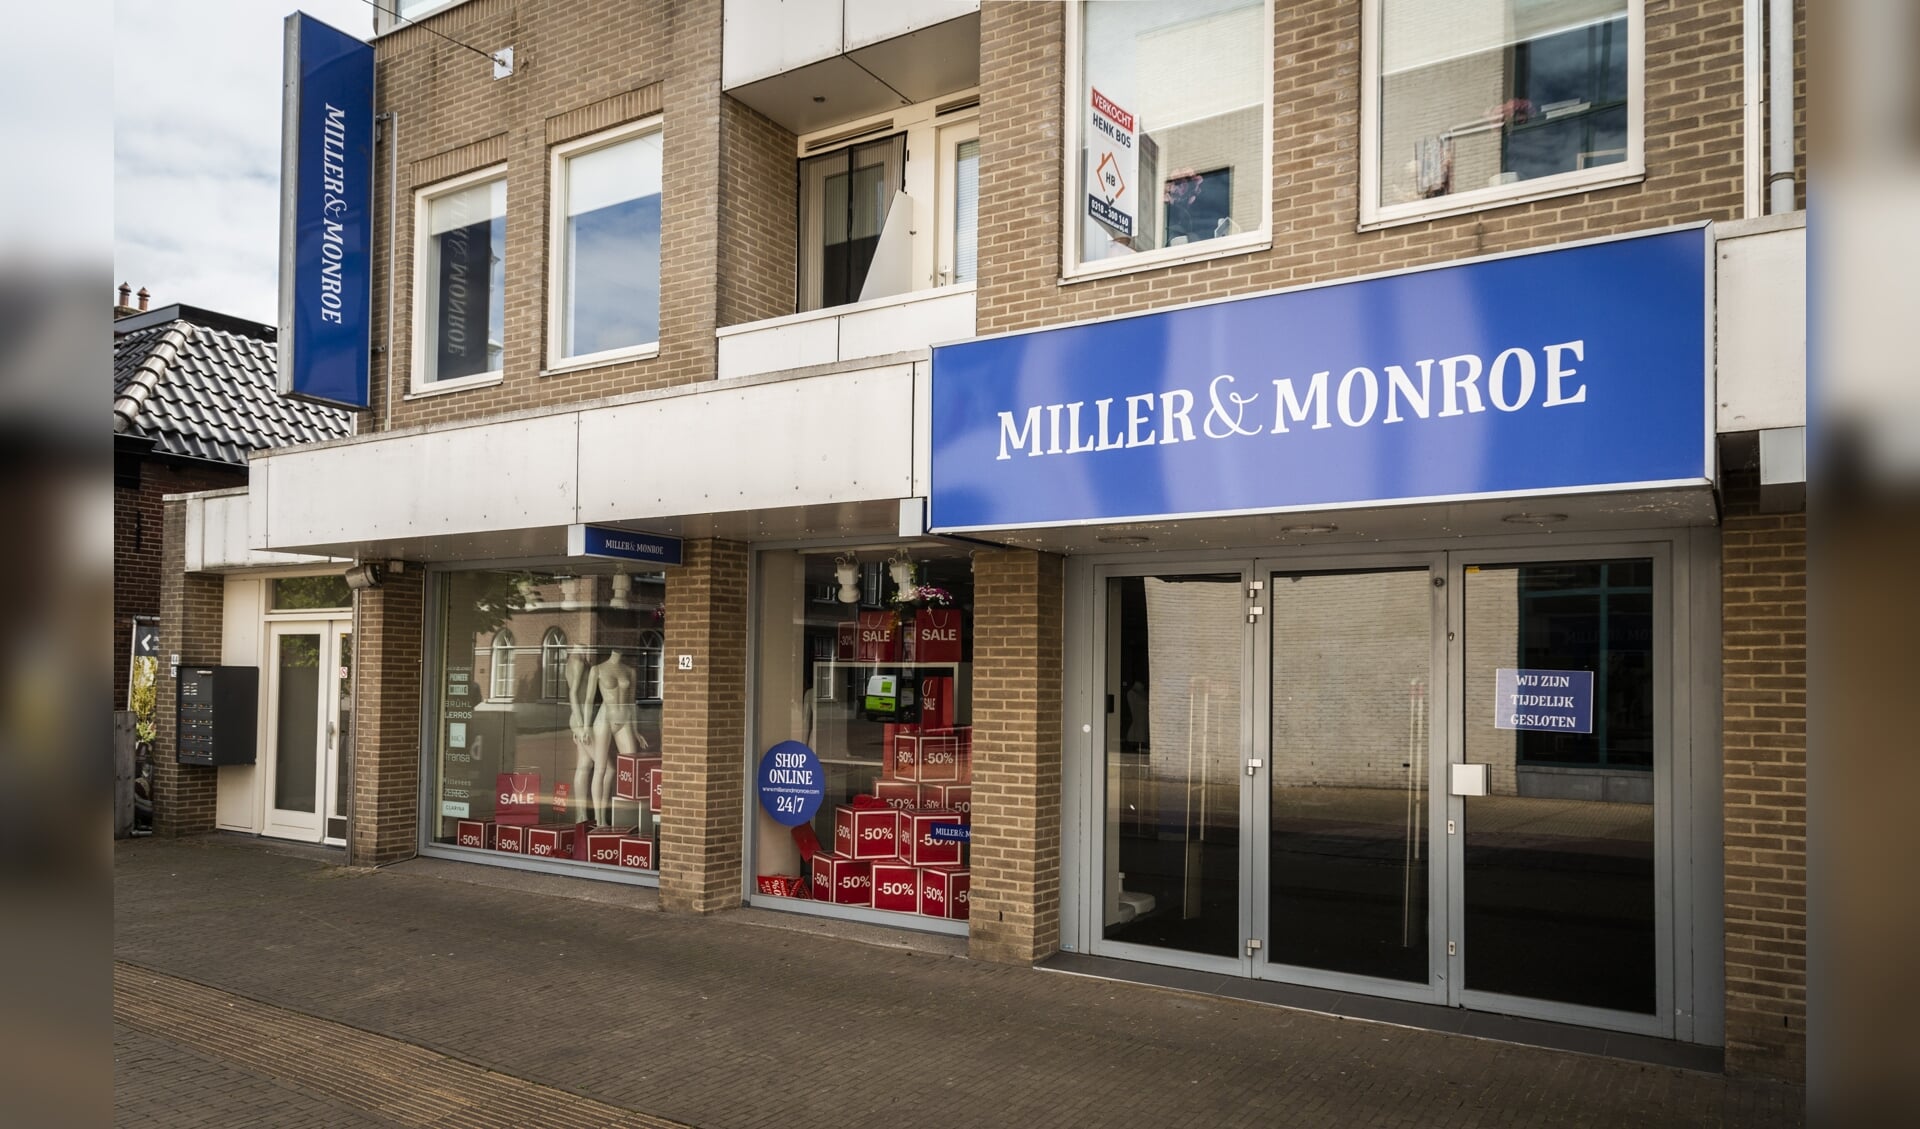 De gemeente Barneveld is in gesprek om het pand van Miller & Monroe te transformeren tot een woongebied.